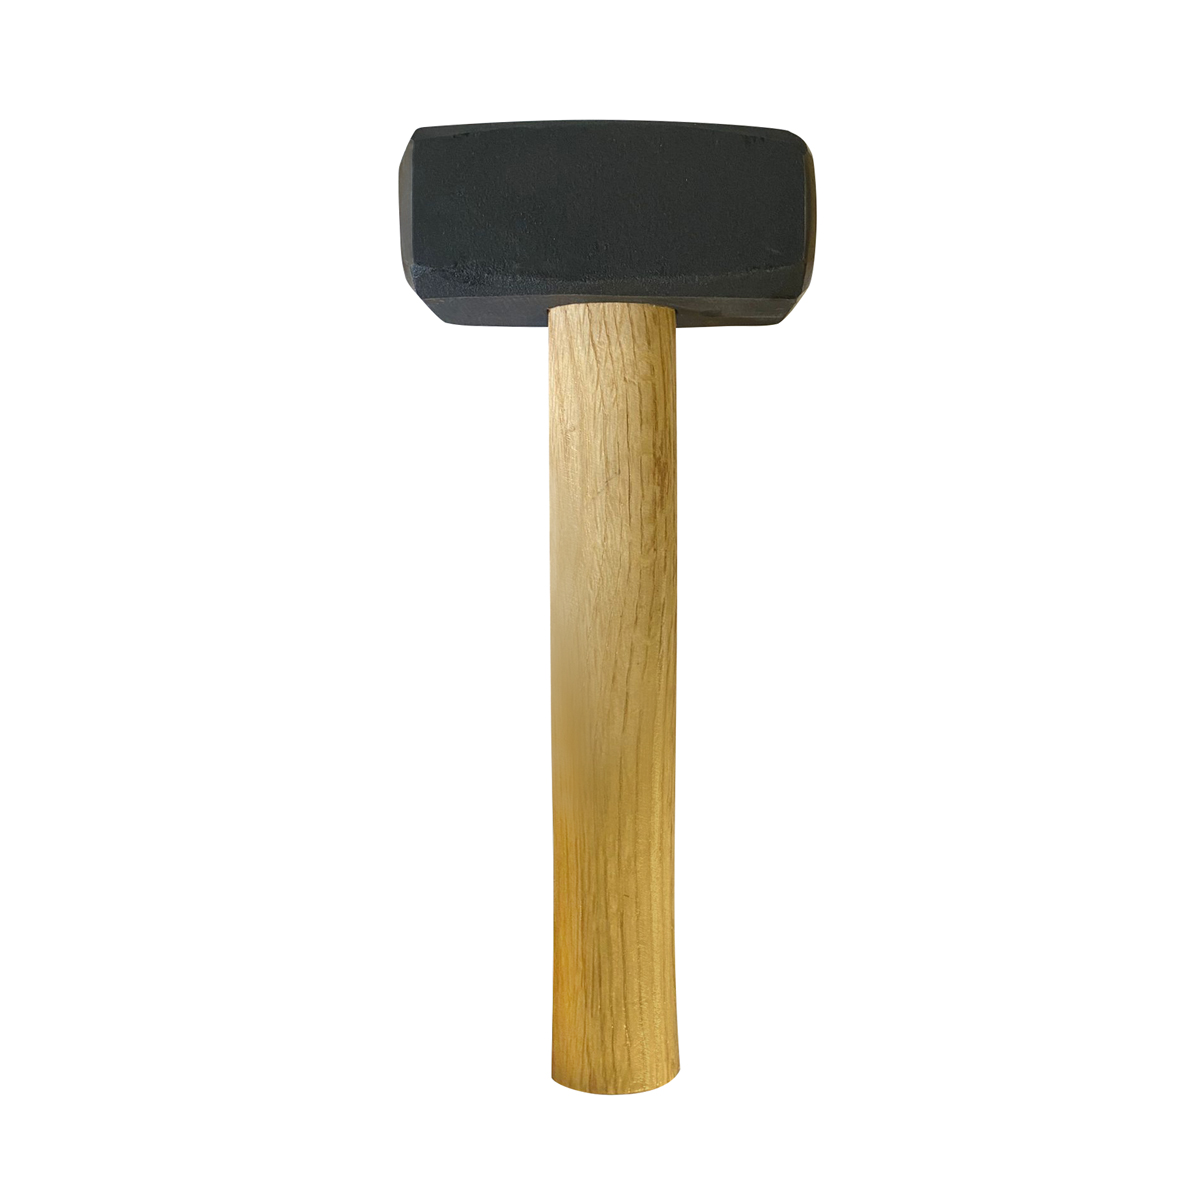 Hammer 1,5 kg - Handfäustel, ringverkeilt Holzstiel 28 cm